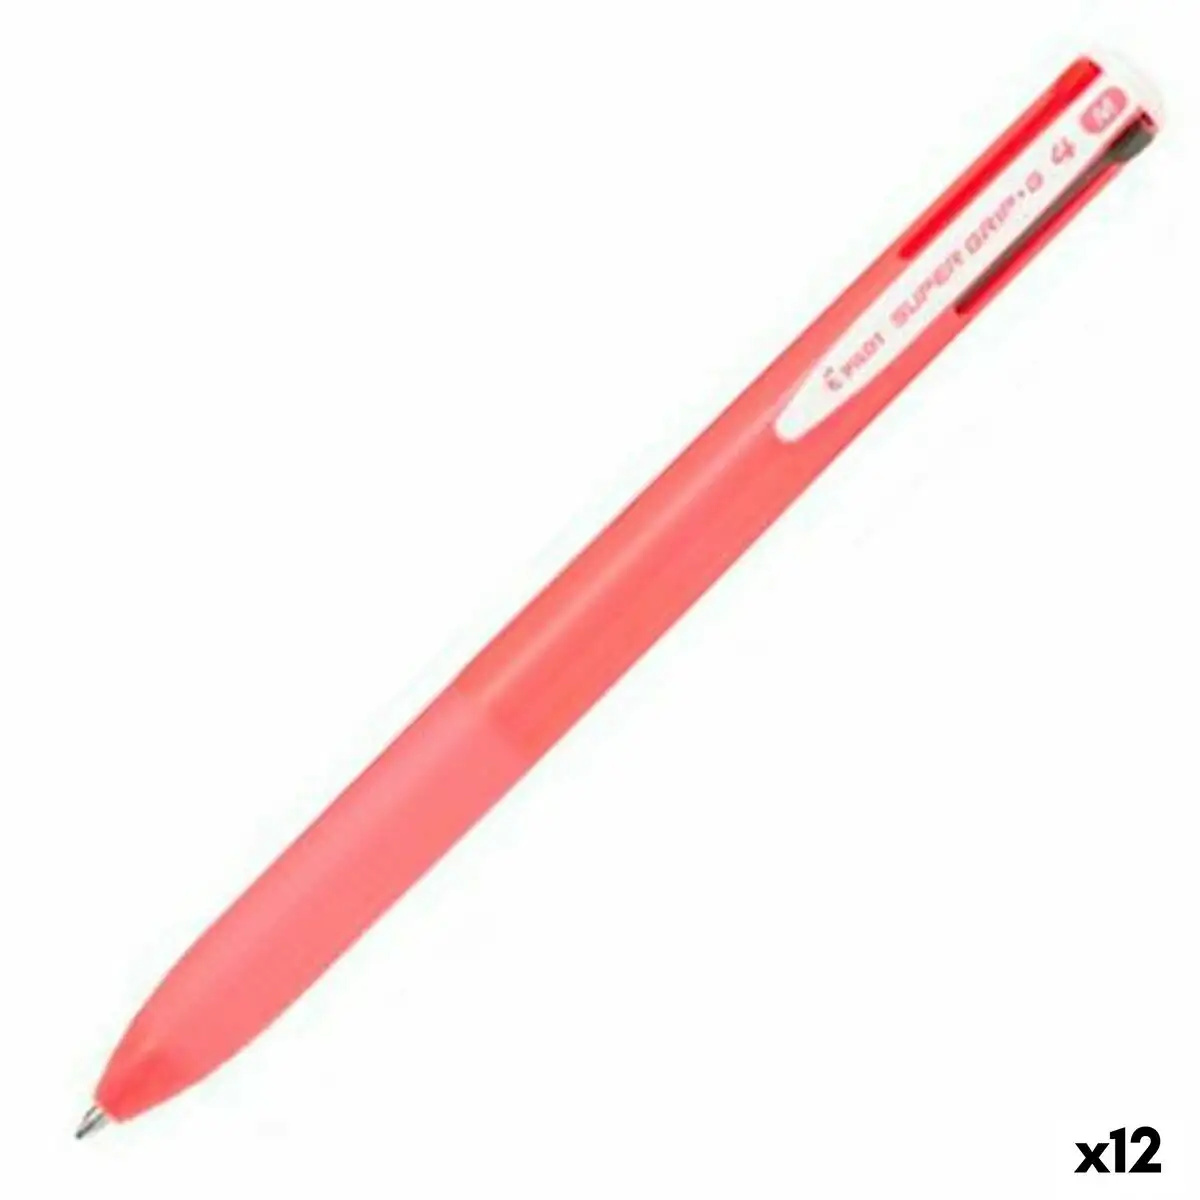 Crayon pilot supergrip g4 rose clair ballon 0 4 mm 12 unites_7159. DIAYTAR SENEGAL - Votre Portail Vers l'Exclusivité. Explorez notre boutique en ligne pour découvrir des produits uniques et raffinés, conçus pour ceux qui recherchent l'excellence.